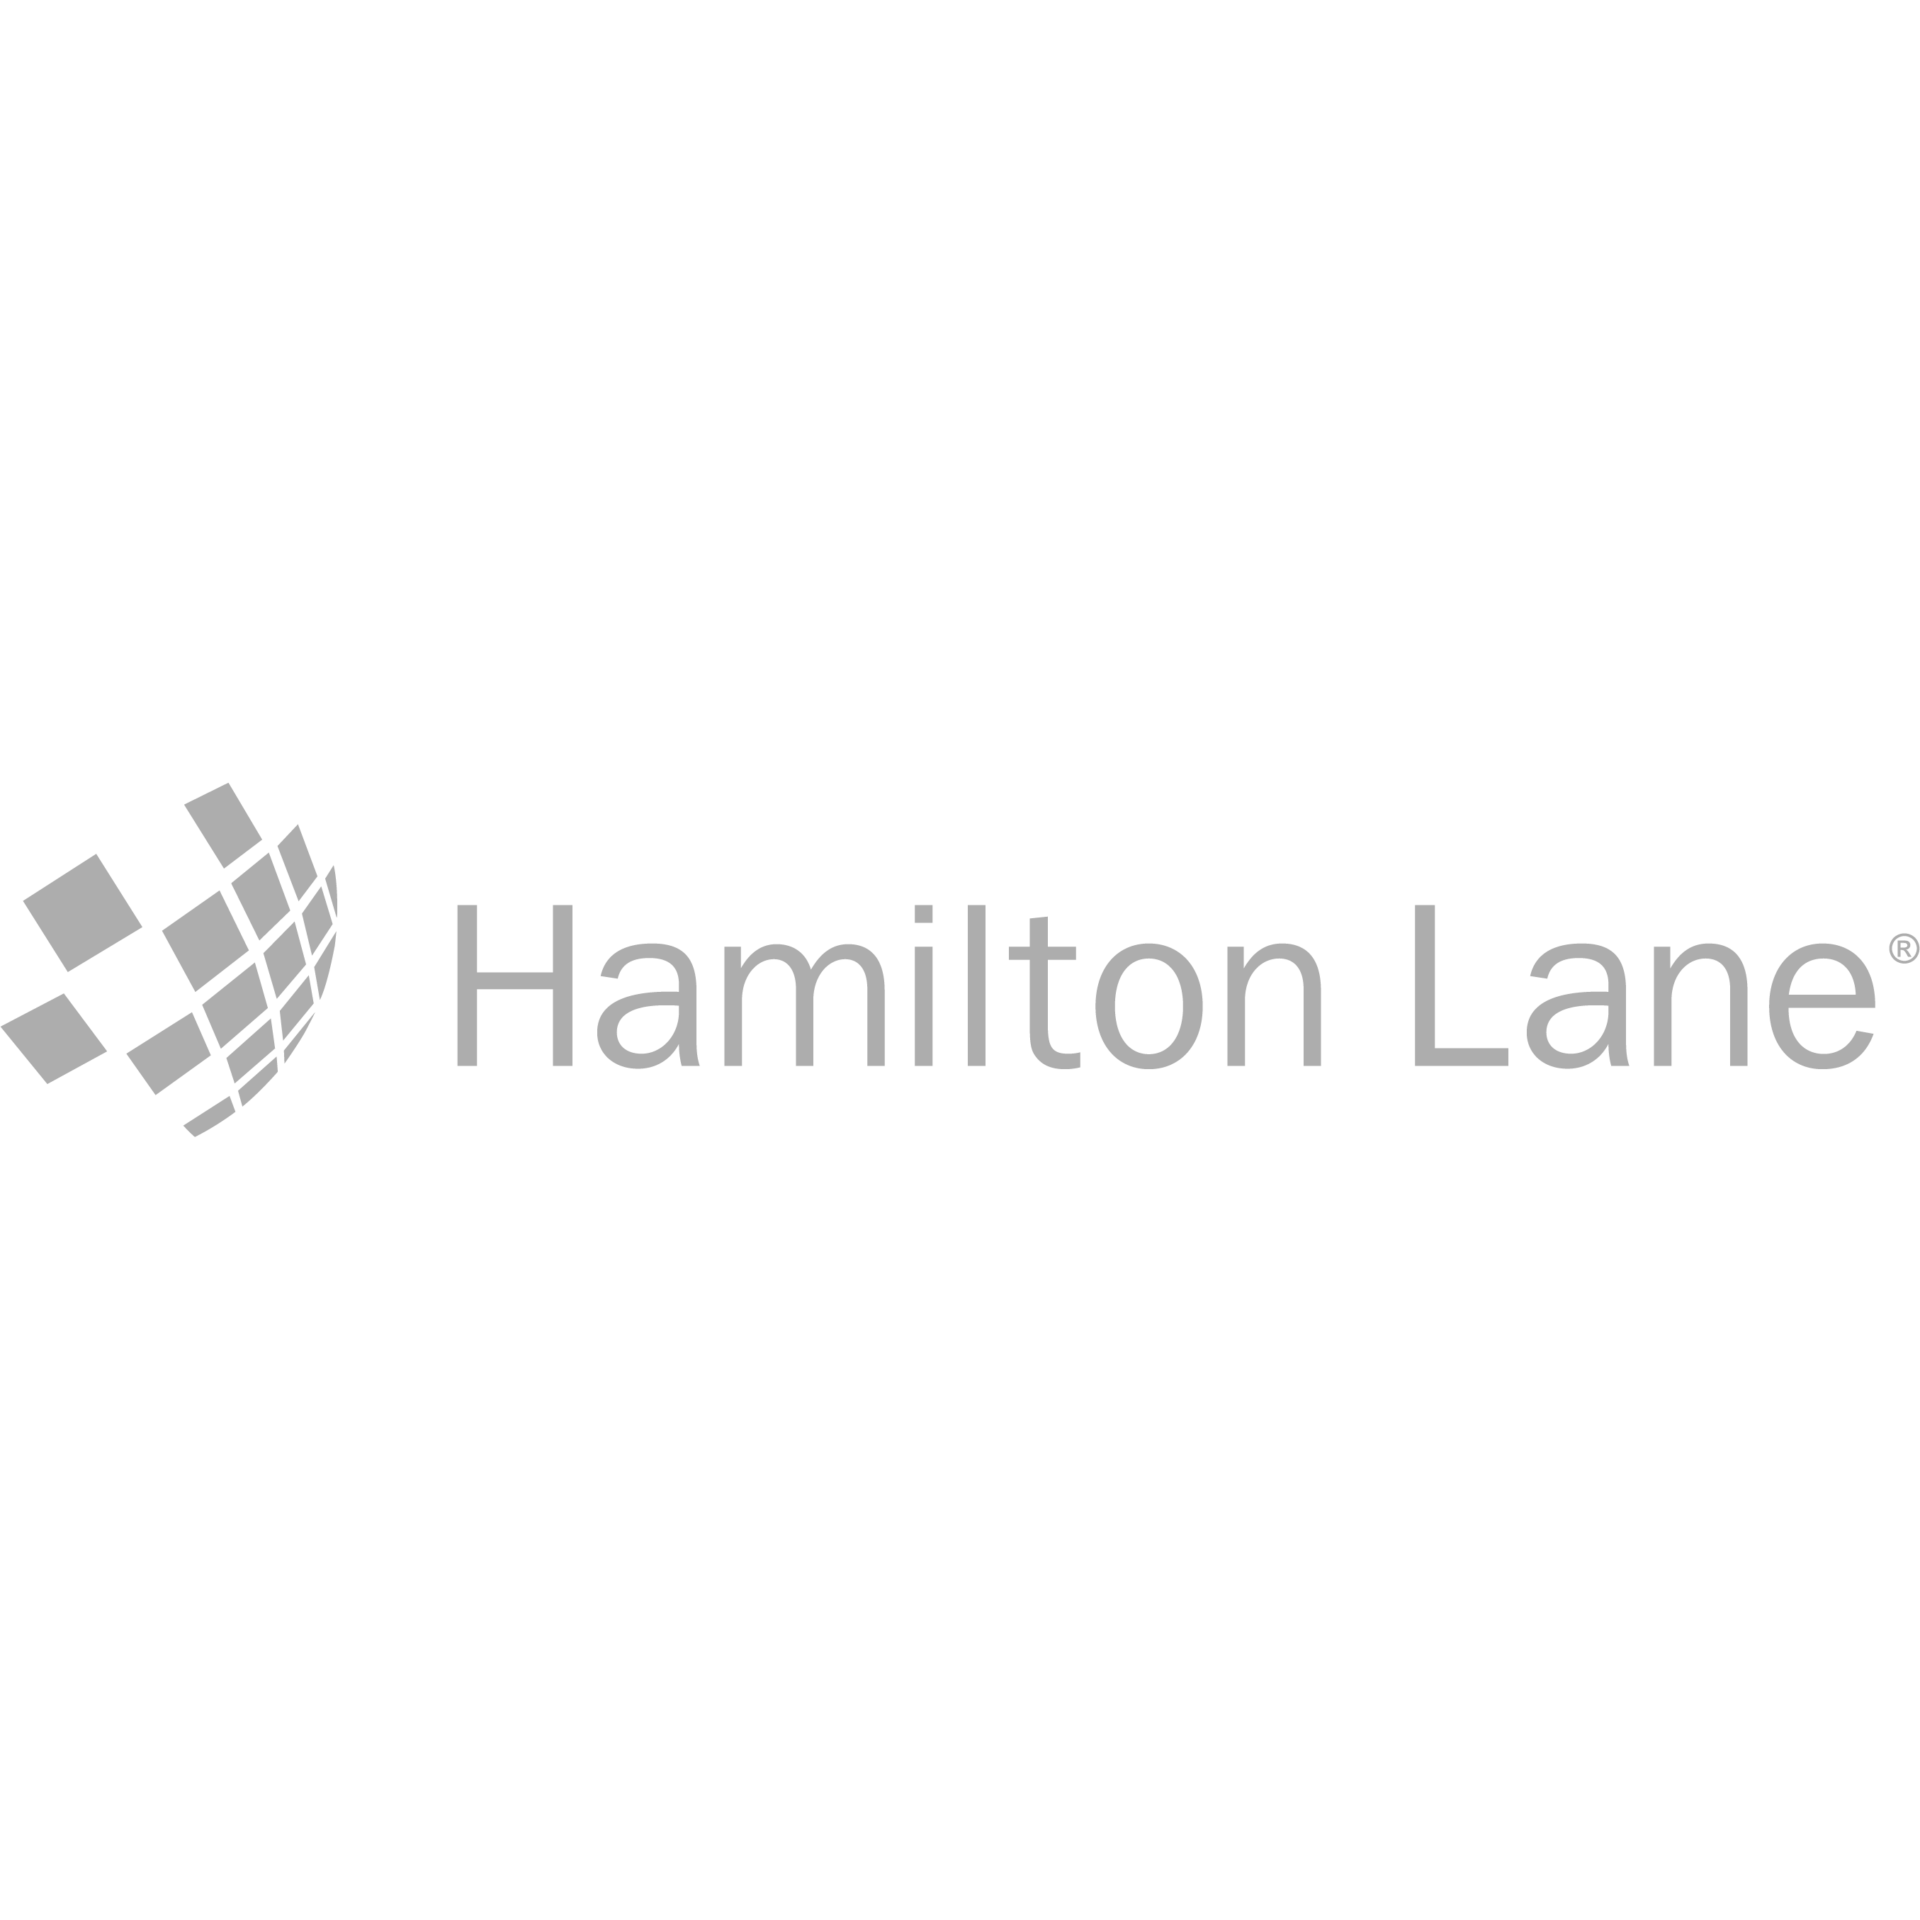 Hamilton Lane